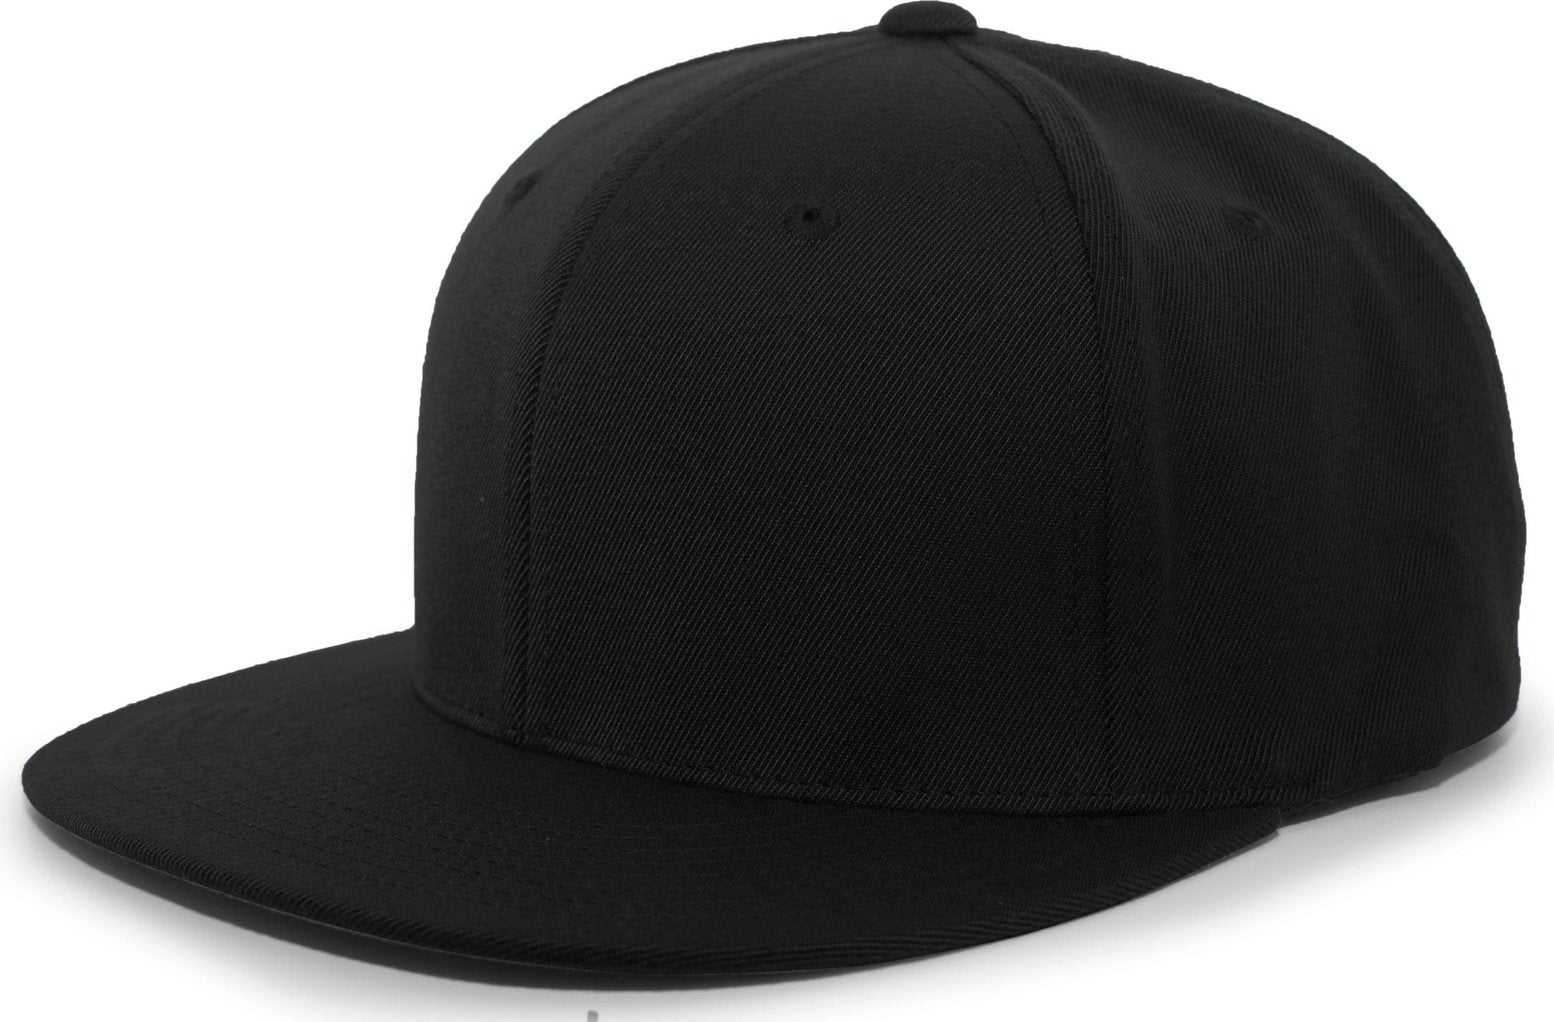 Pacific Headwear 8D5 A/C?ý Performance D-Series Flexfit Cap - Black - HIT a Double